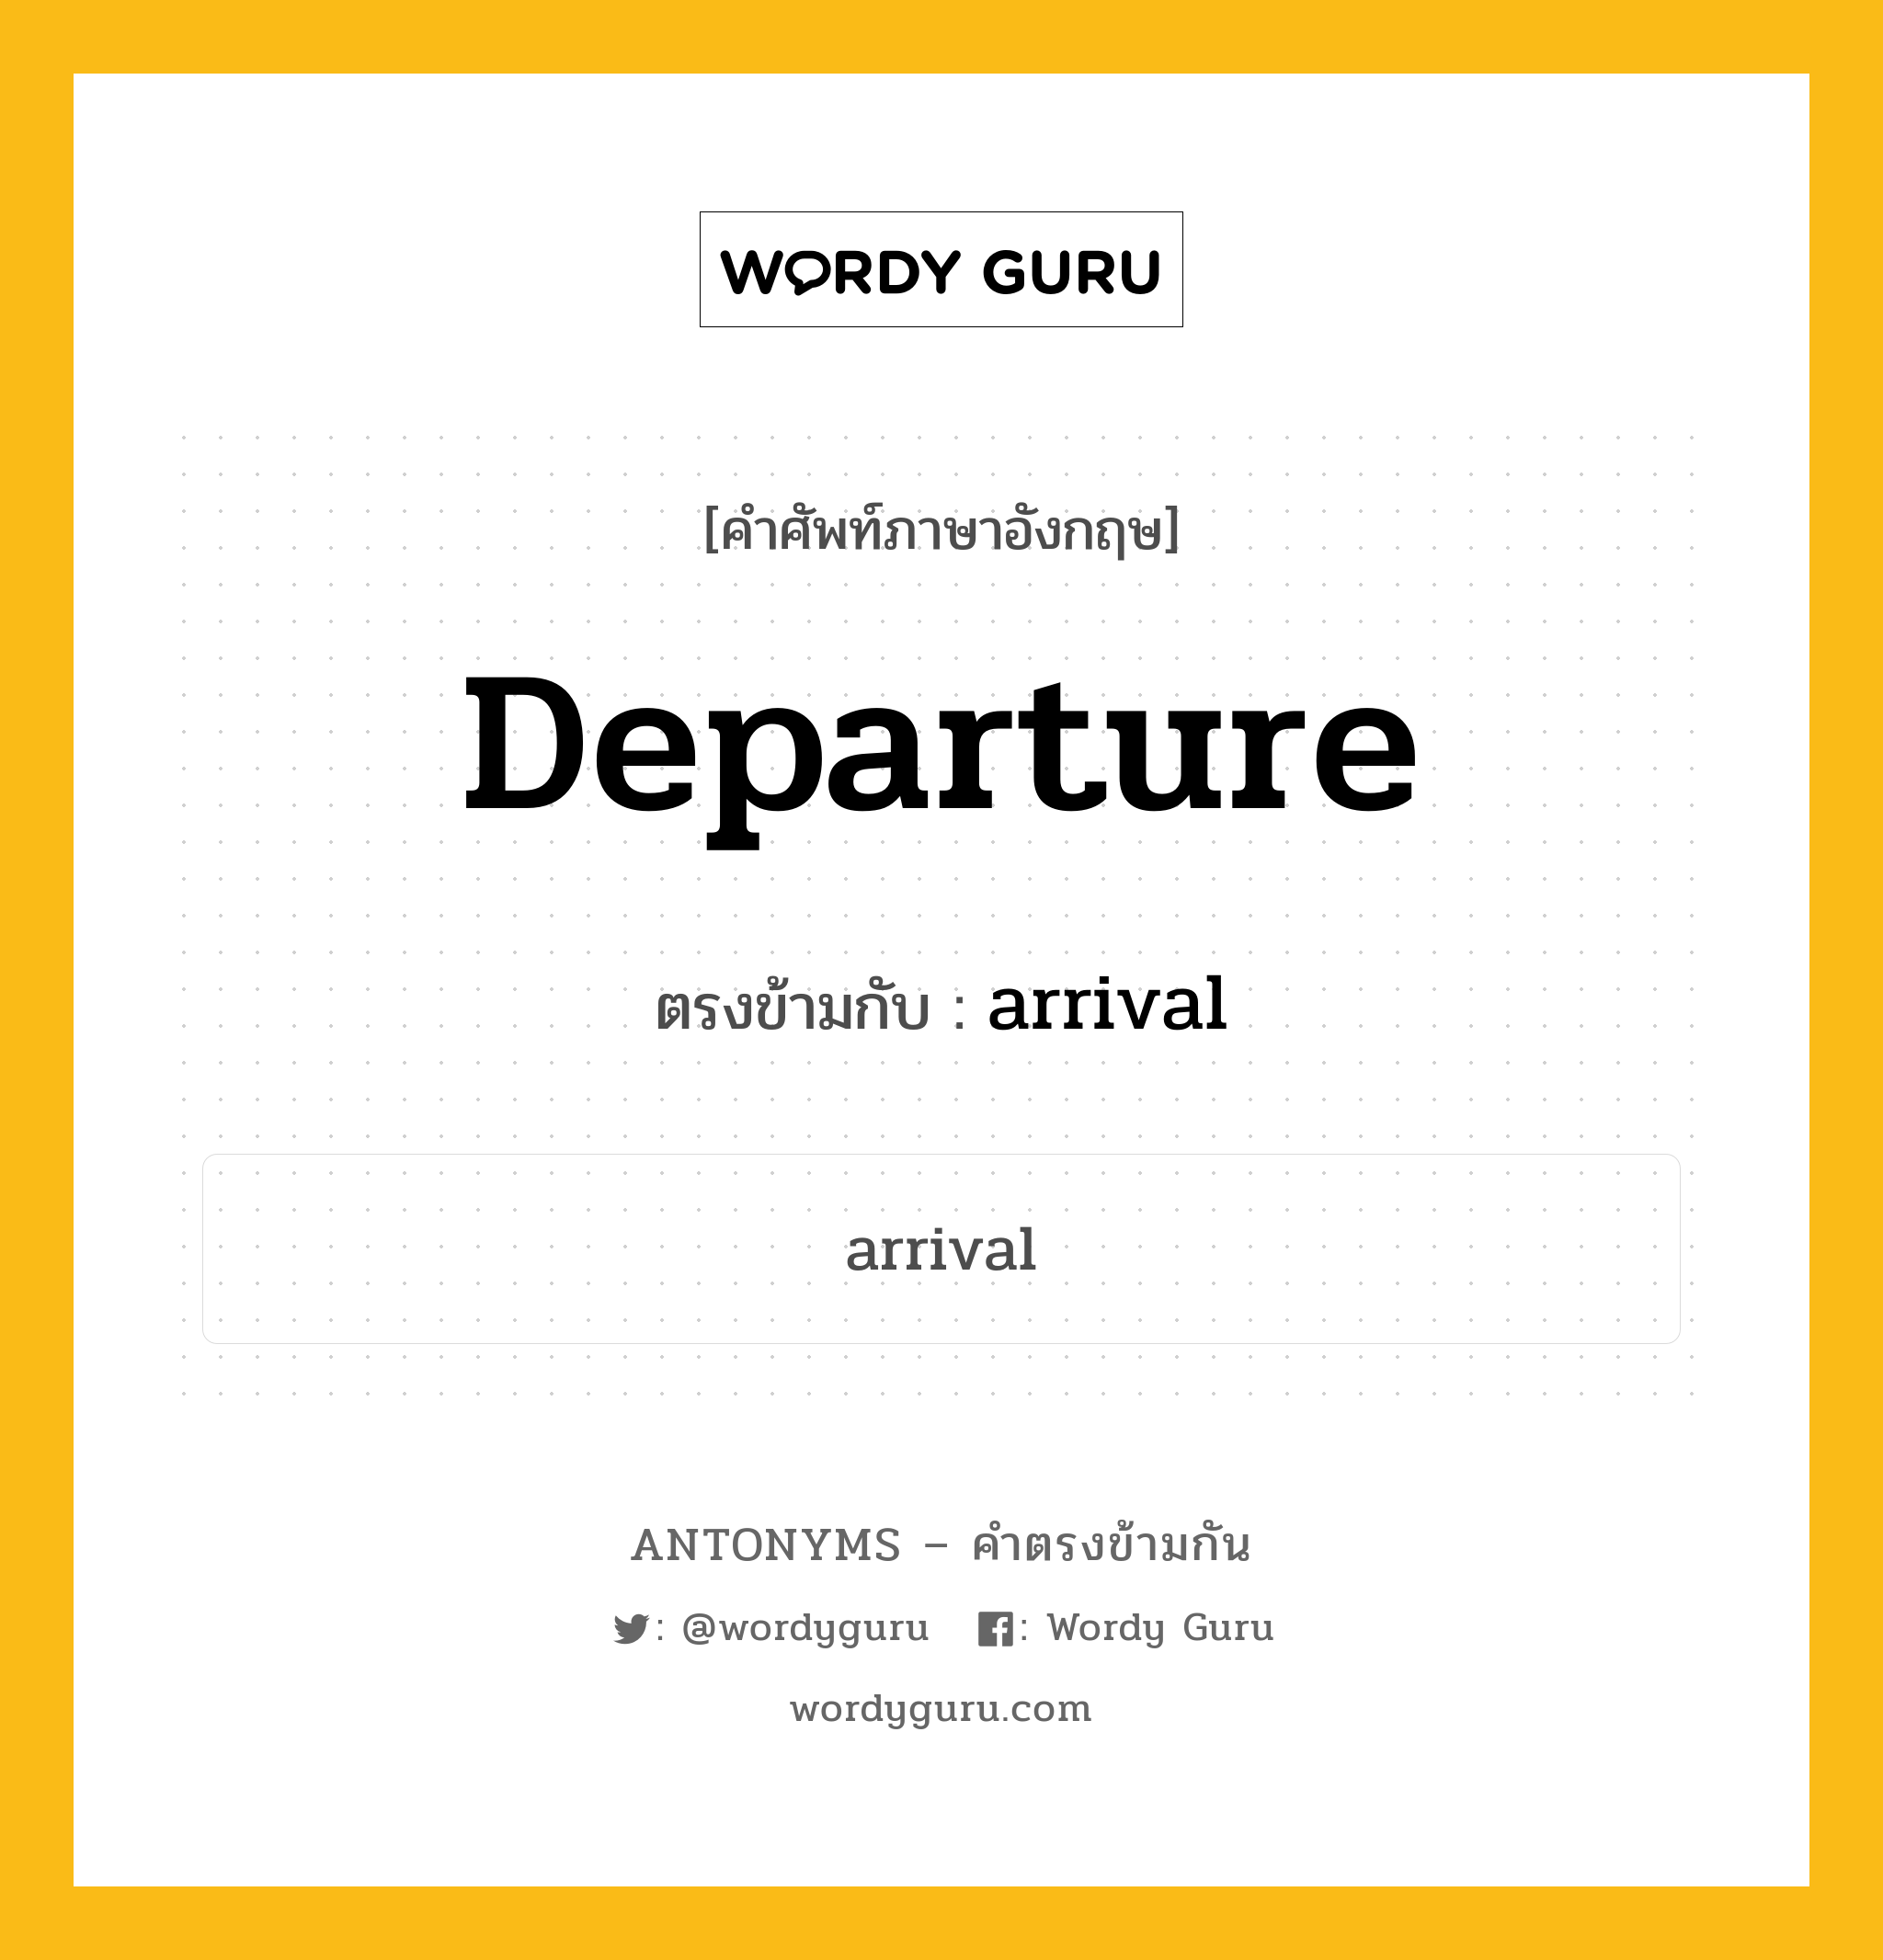 departure เป็นคำตรงข้ามกับคำไหนบ้าง?, คำศัพท์ภาษาอังกฤษ departure ตรงข้ามกับ arrival หมวด arrival